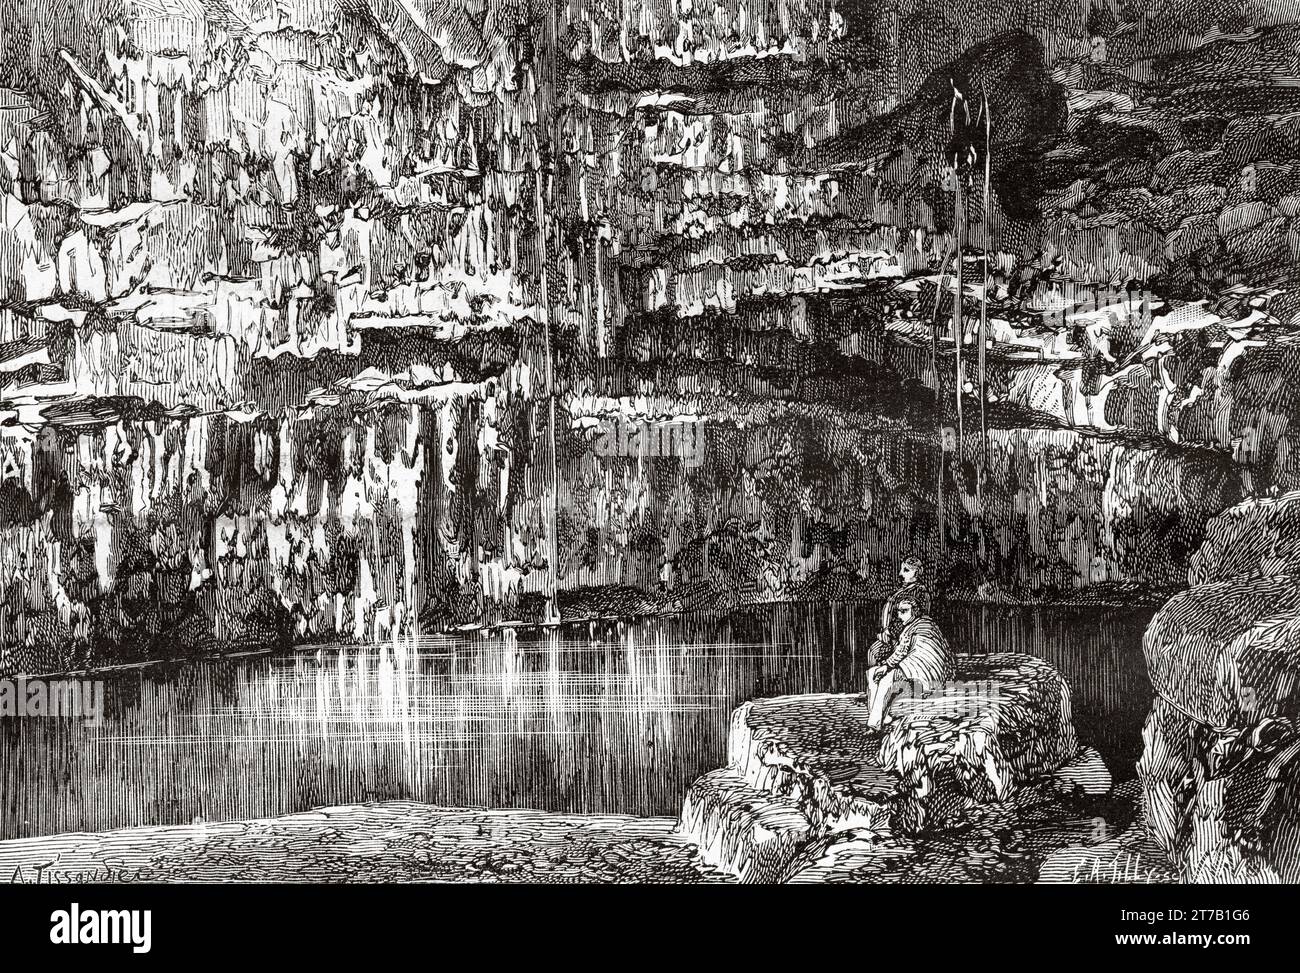 Il cenote Mucuyche, Yucatan. Messico. Vecchia illustrazione di la Nature 1887 Foto Stock